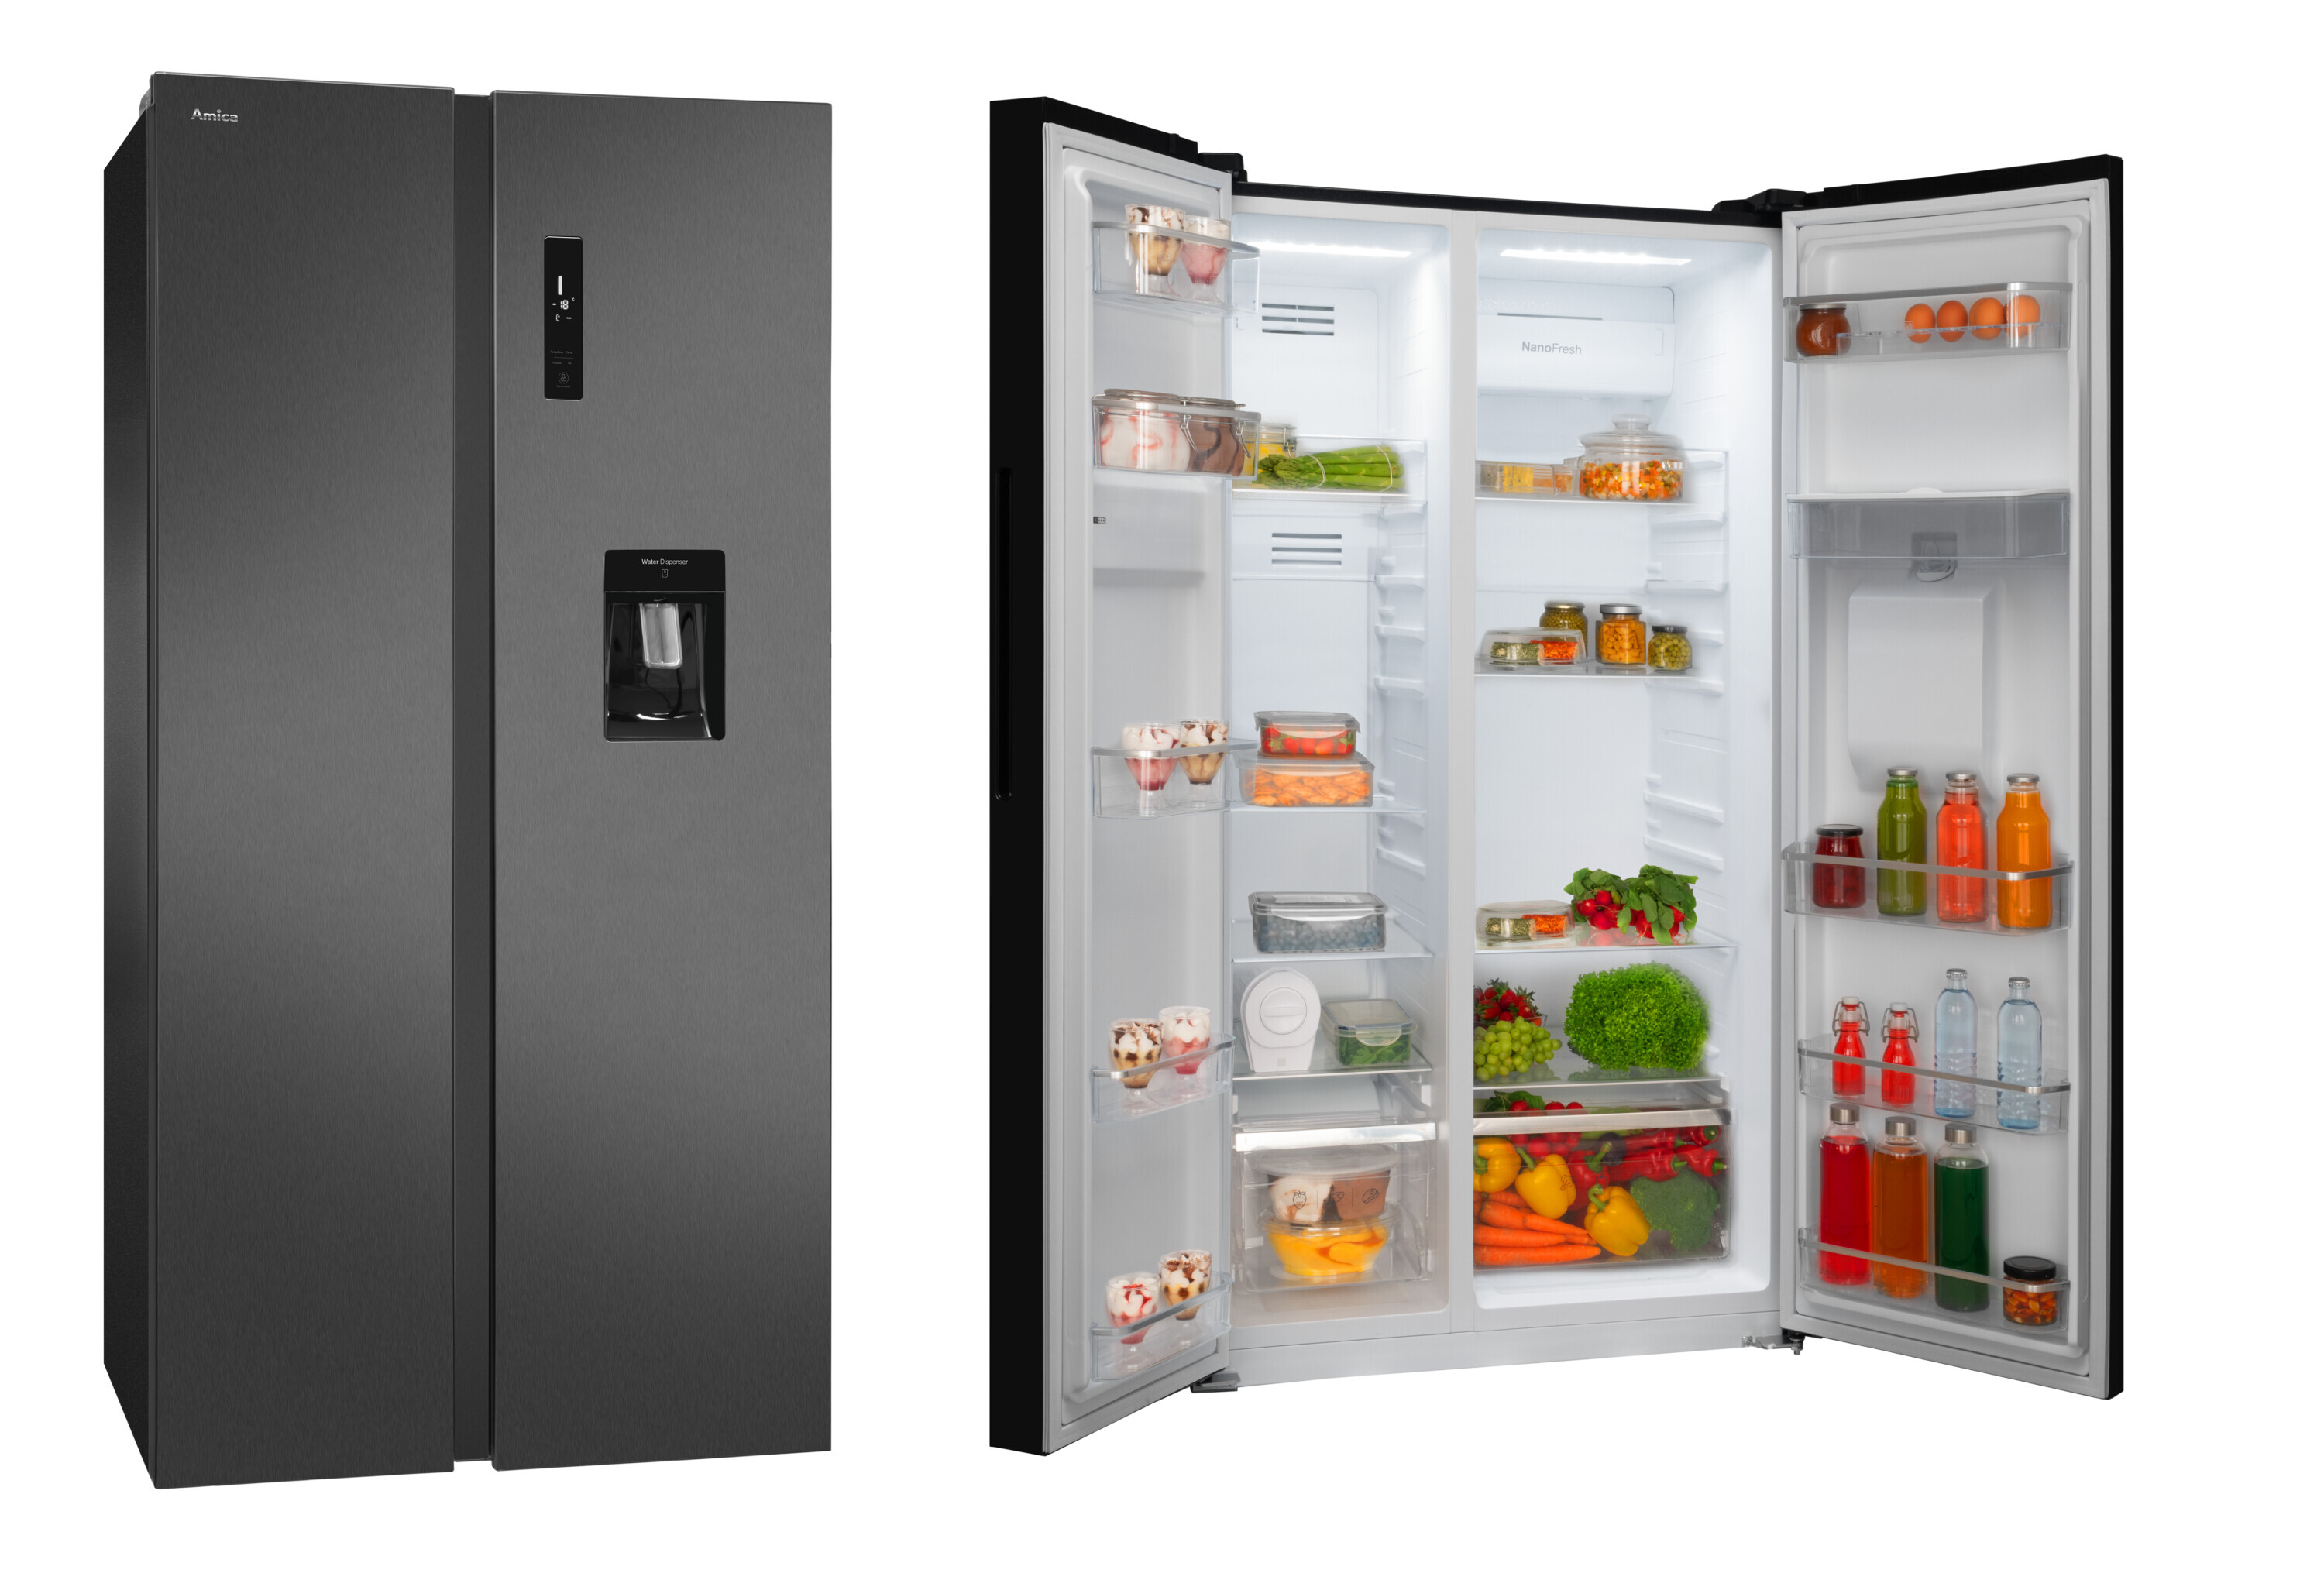 Samostalni kombinovani frižider